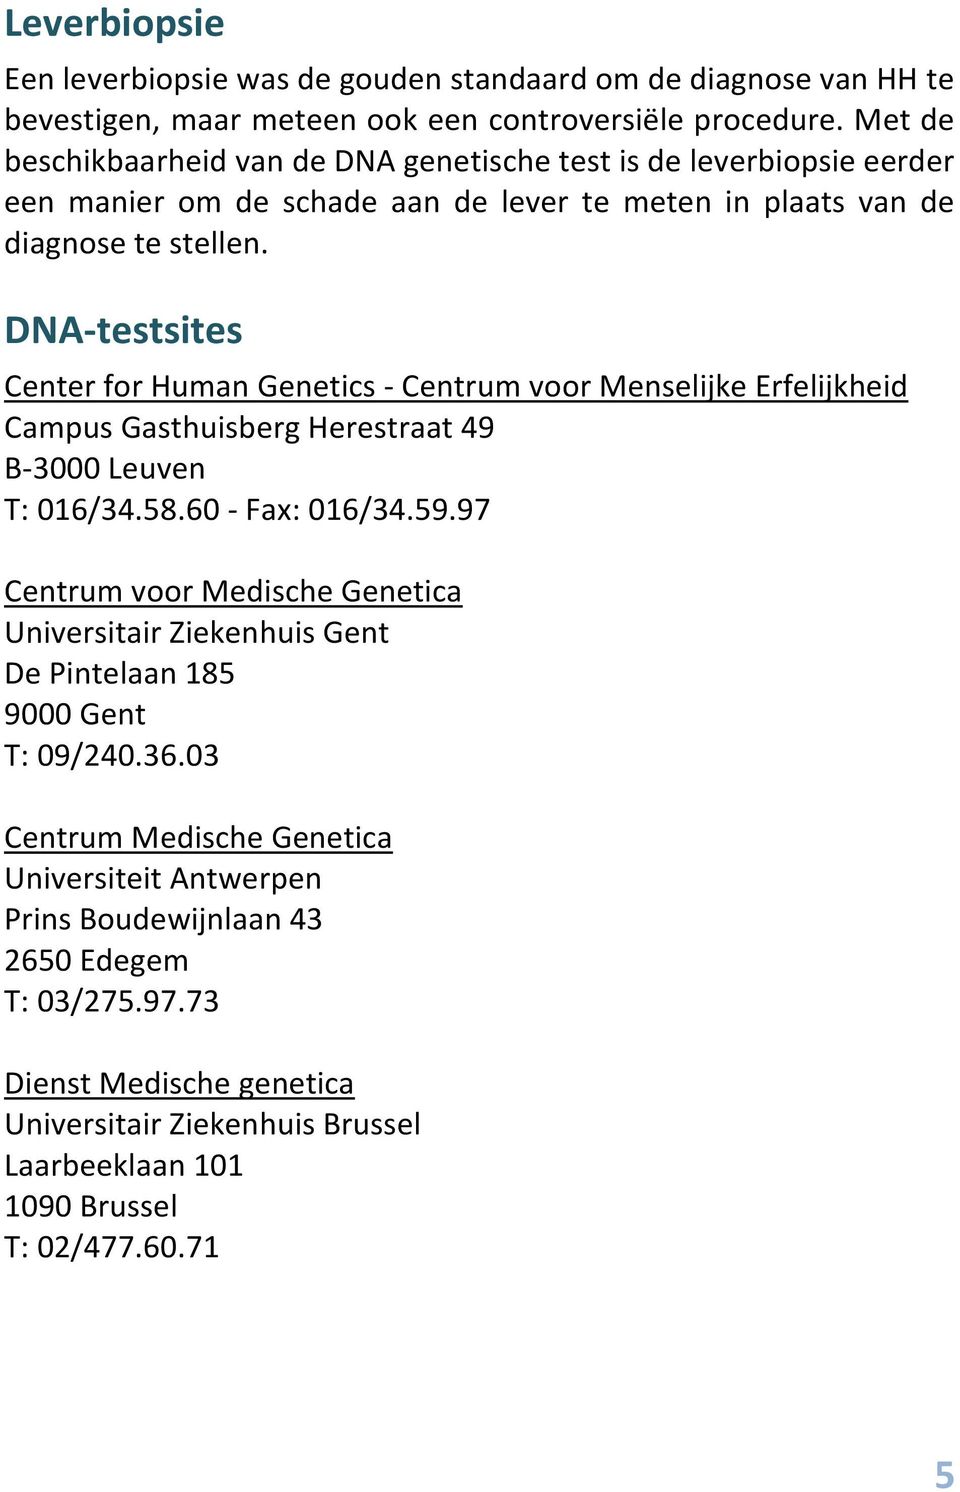 DNA-testsites Center for Human Genetics - Centrum voor Menselijke Erfelijkheid Campus Gasthuisberg Herestraat 49 B-3000 Leuven T: 016/34.58.60 - Fax: 016/34.59.